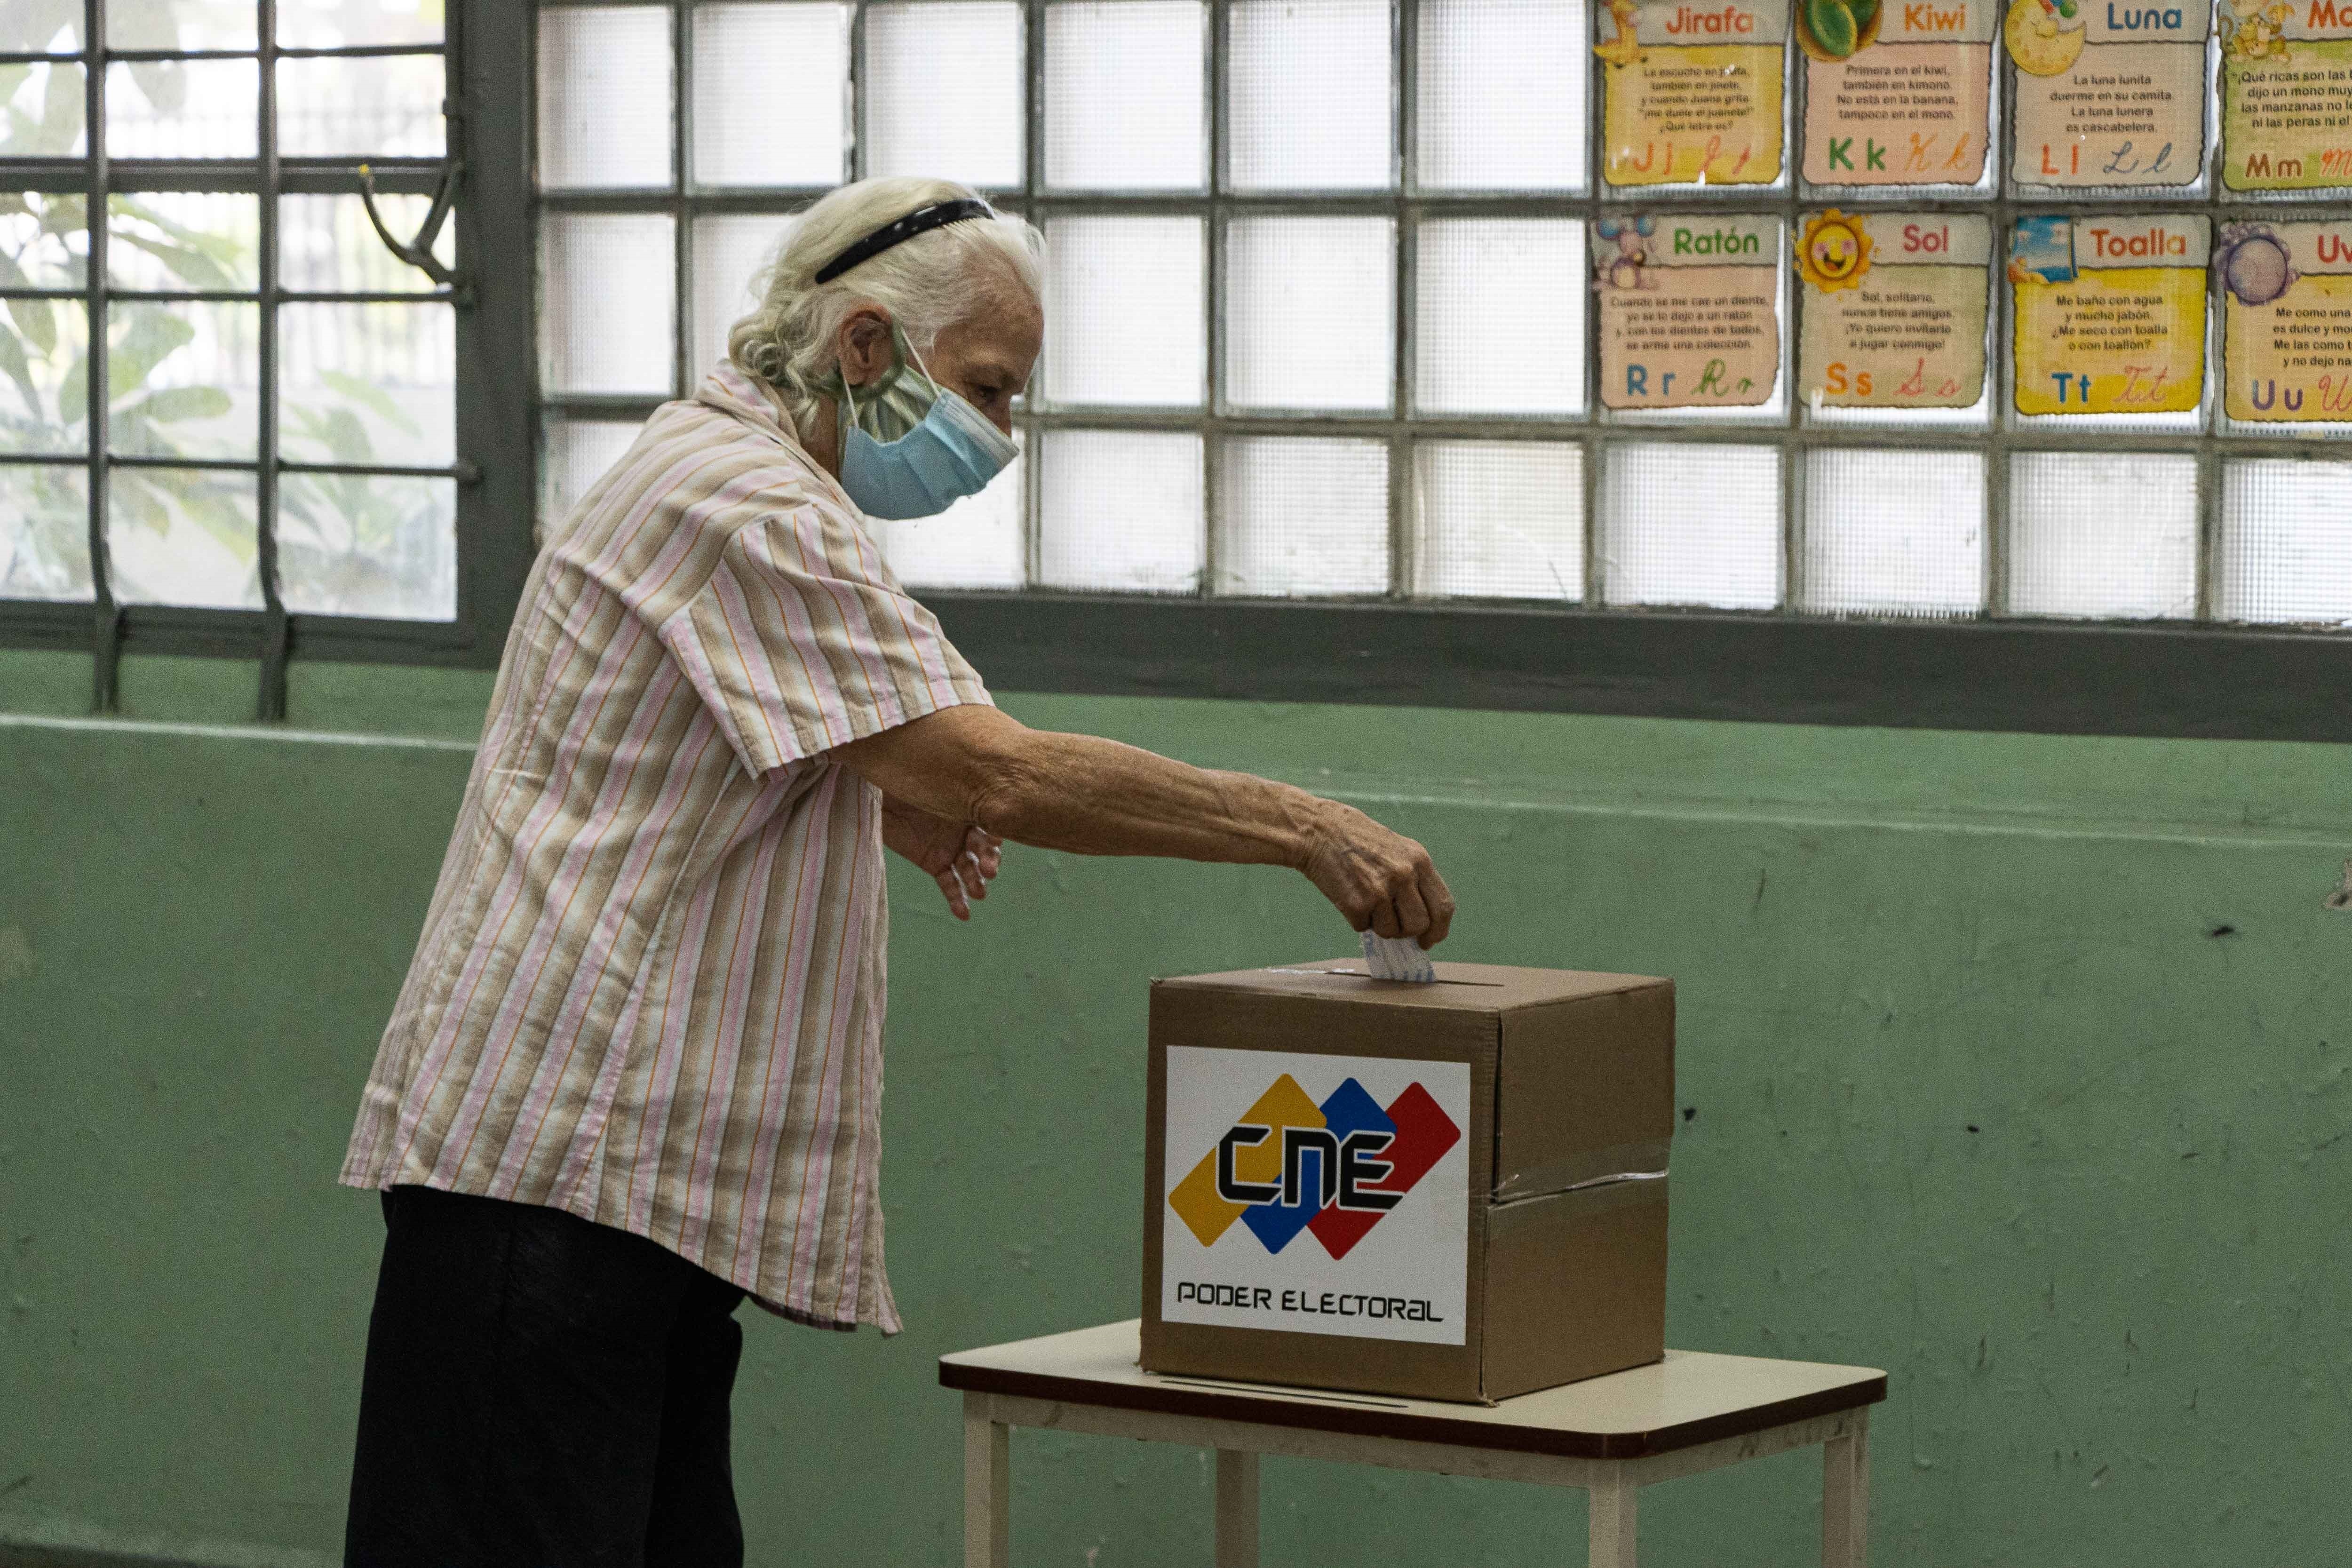 La nueva jugada del chavismo: Planean vigilar las RRSS durante campaña electoral